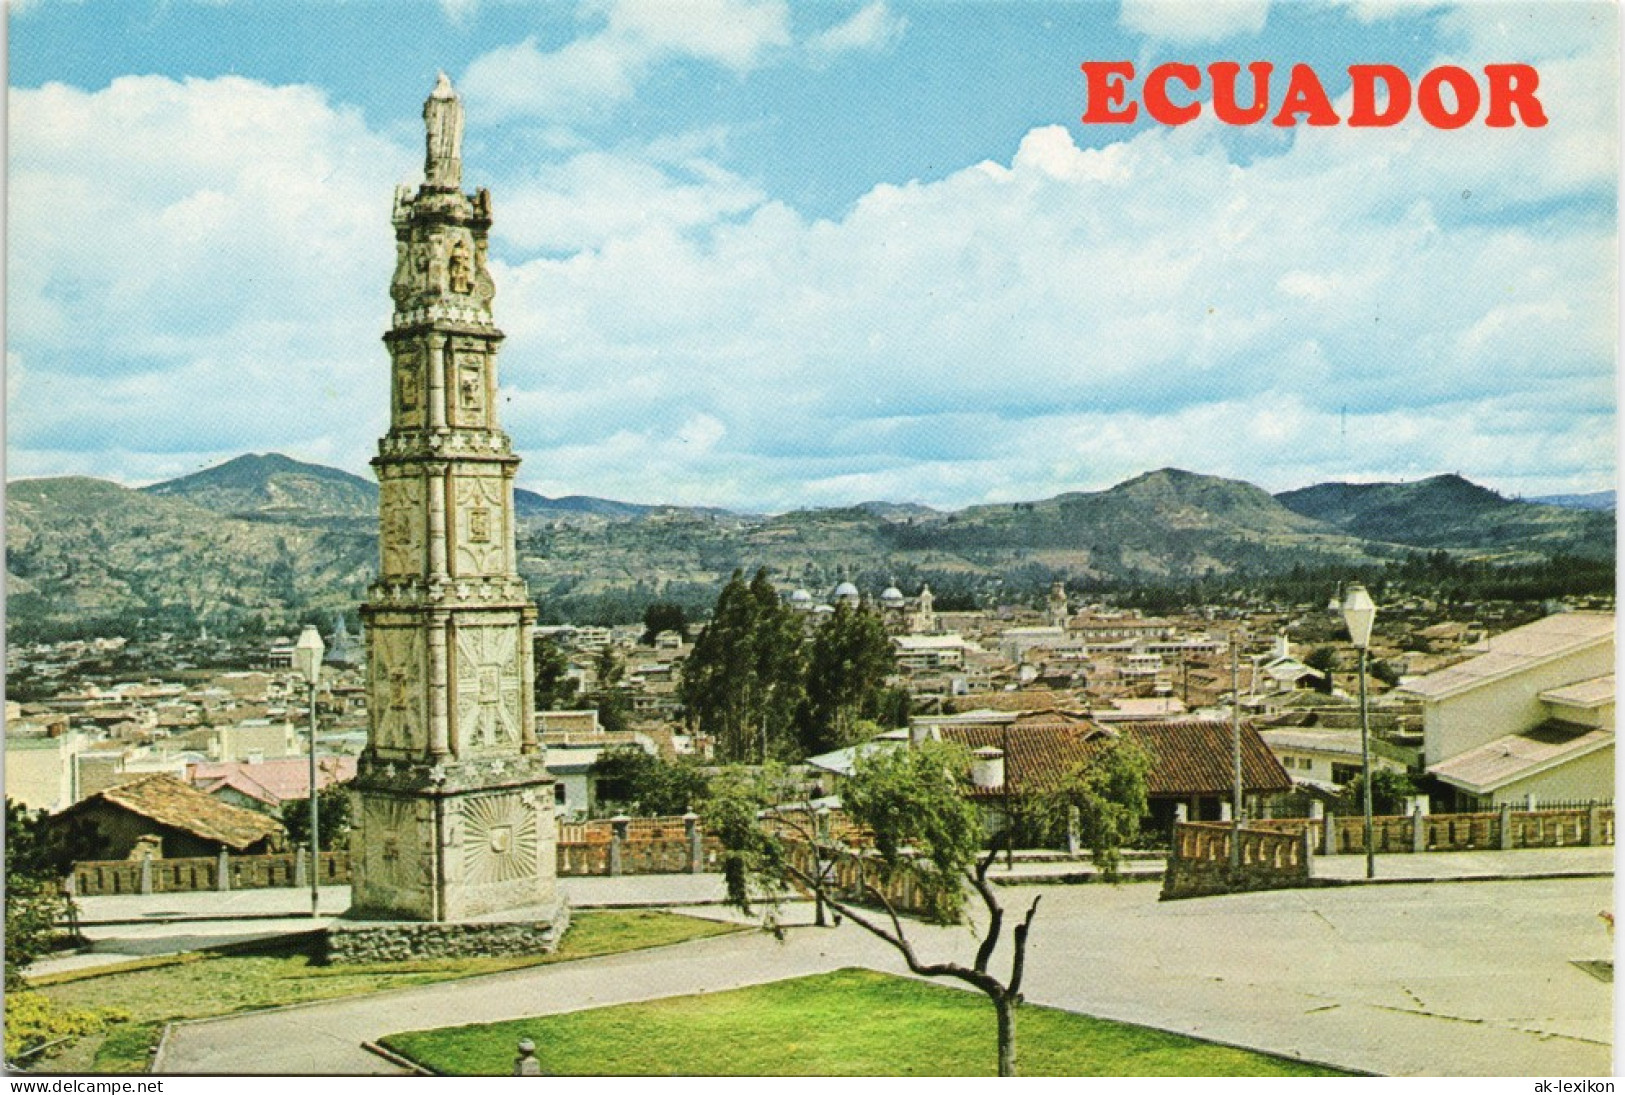 Postcard Cuenca Cuenca City Ciudad ECUADOR, SUD-AMERICA 1970 - Ecuador